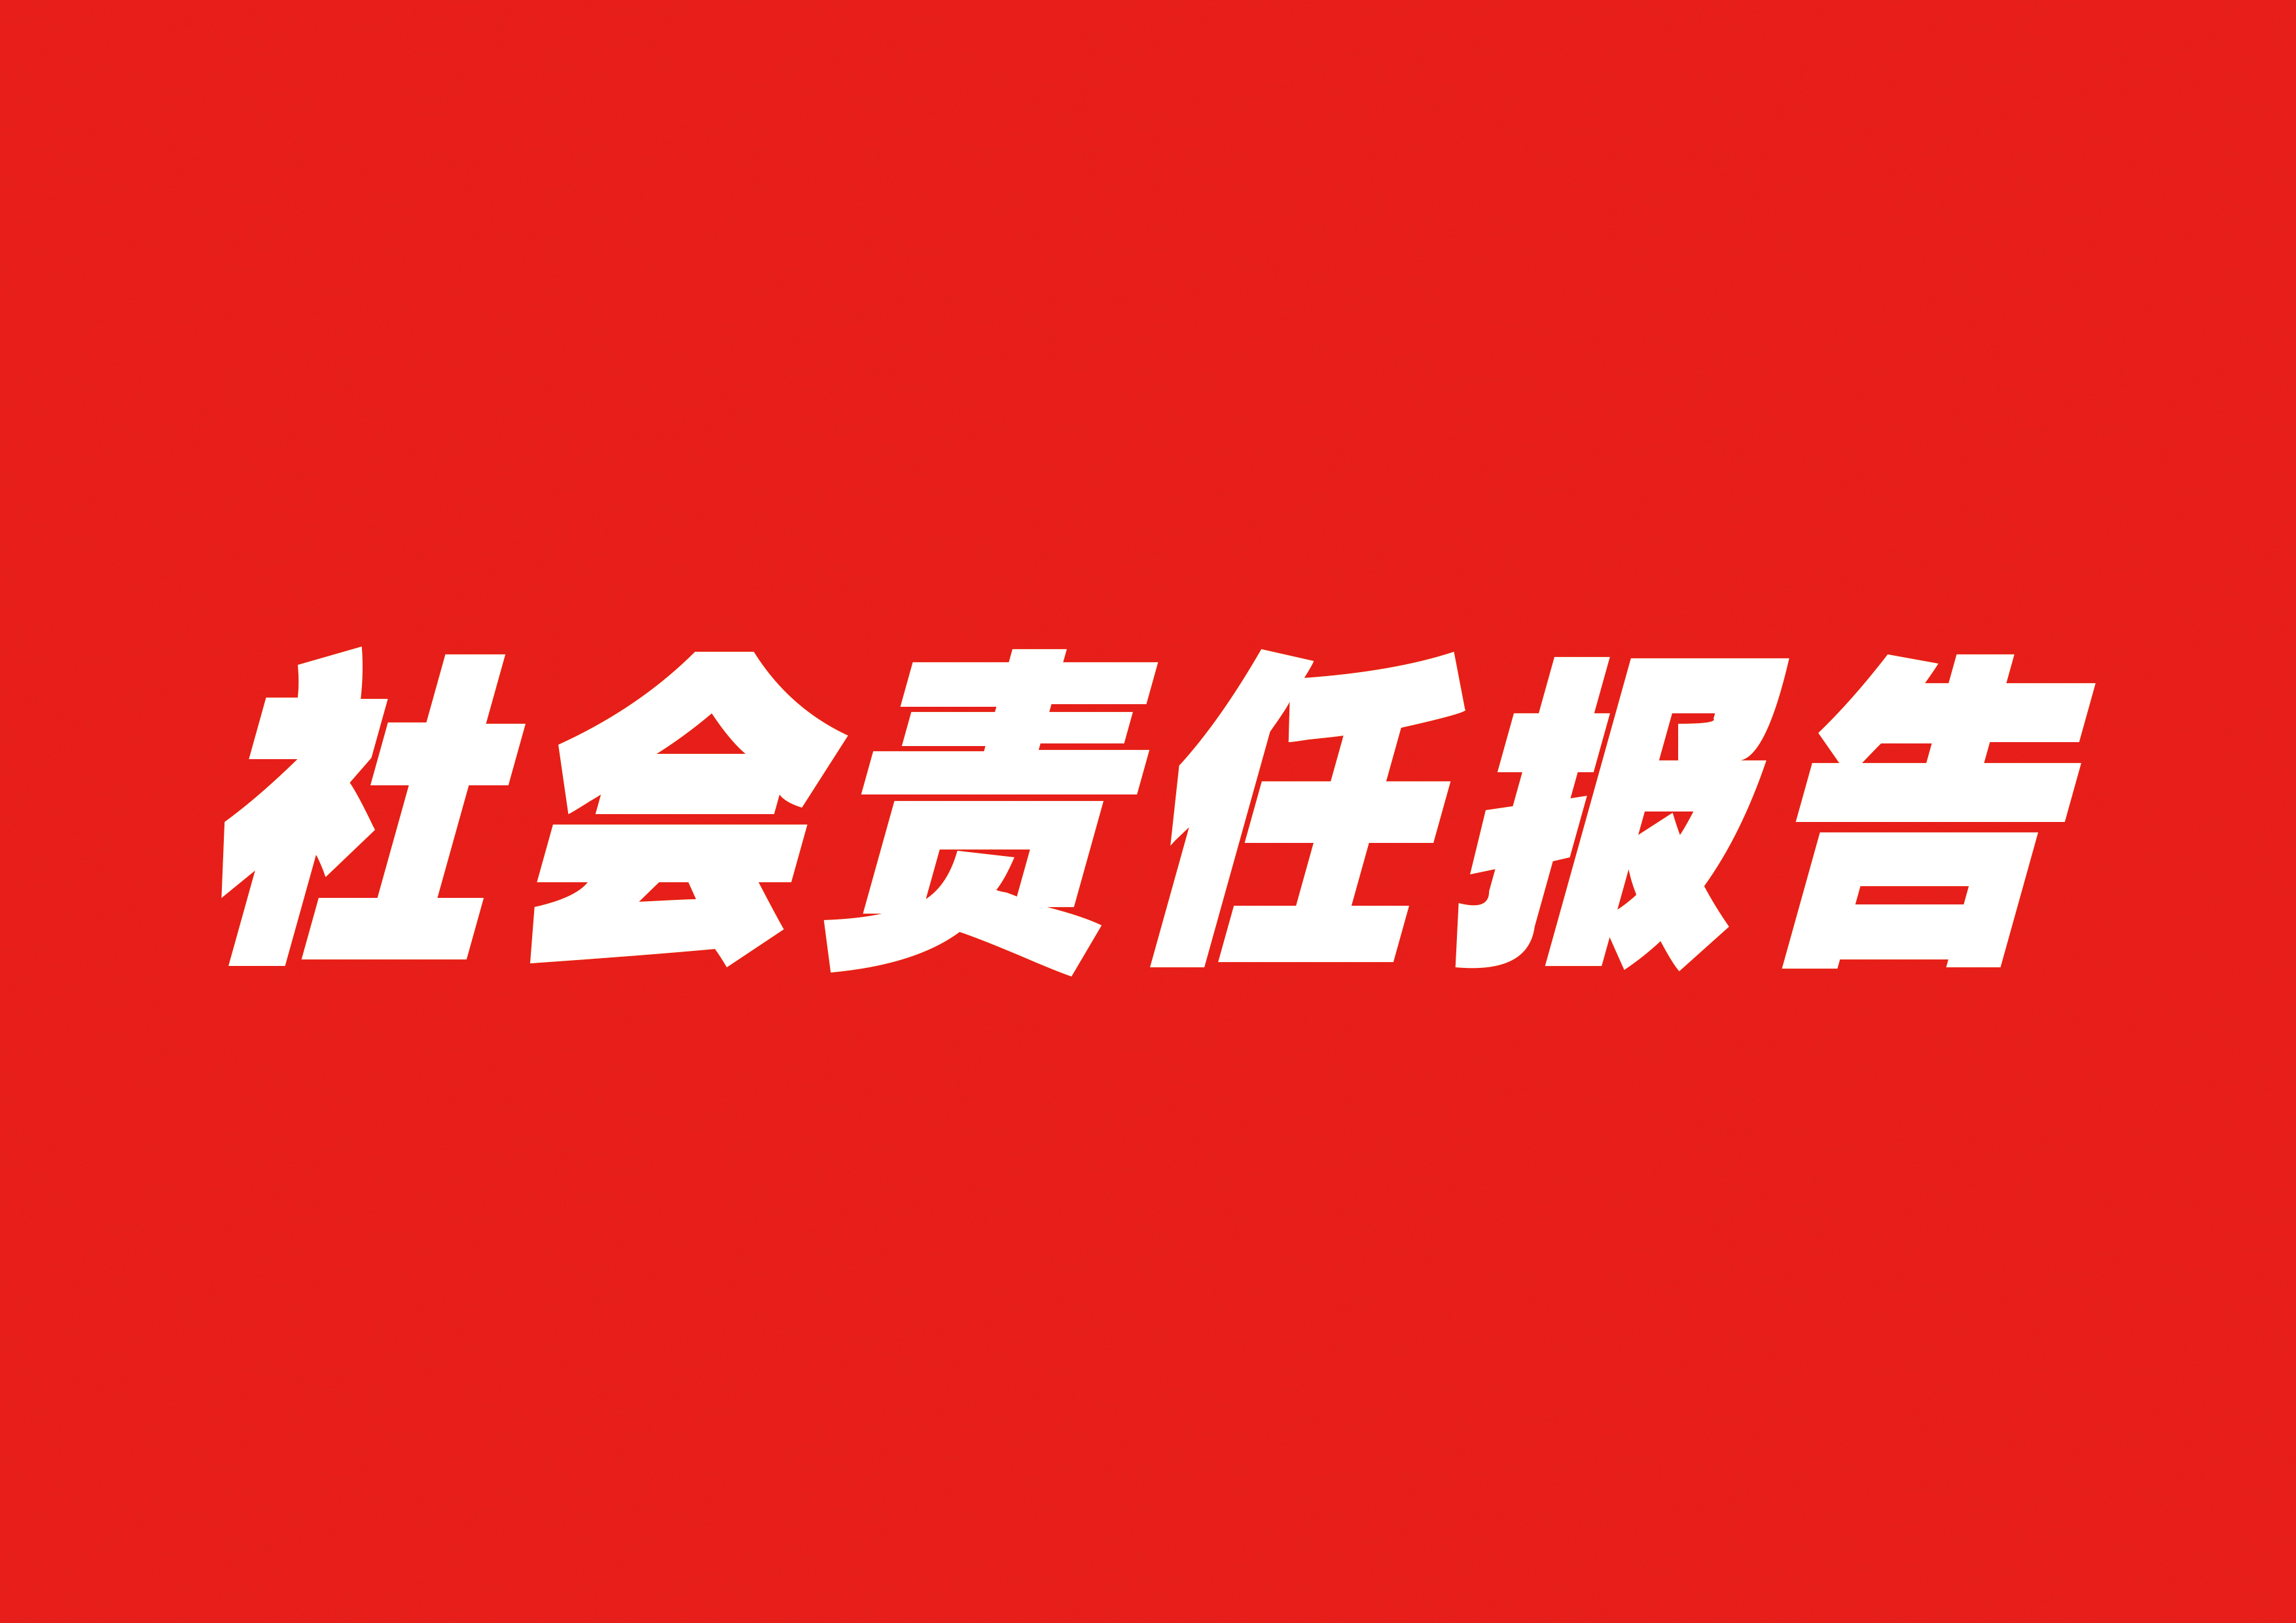 安徽岸香國際企業管理有限公司社會責任報告